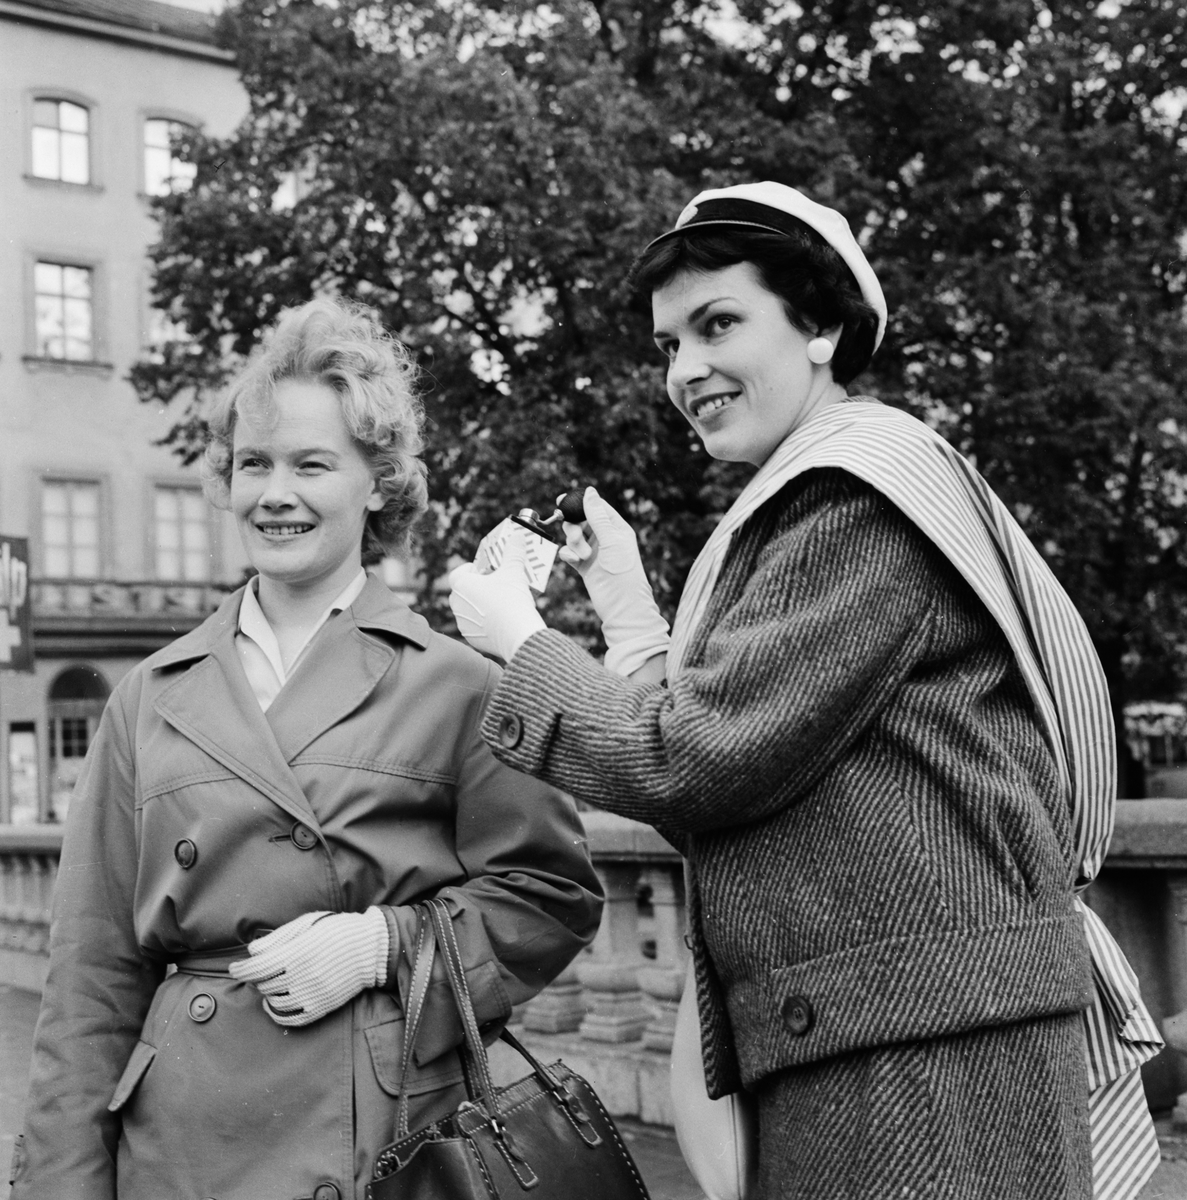 Studentliv - operation dagsverke, Uppsala september 1960